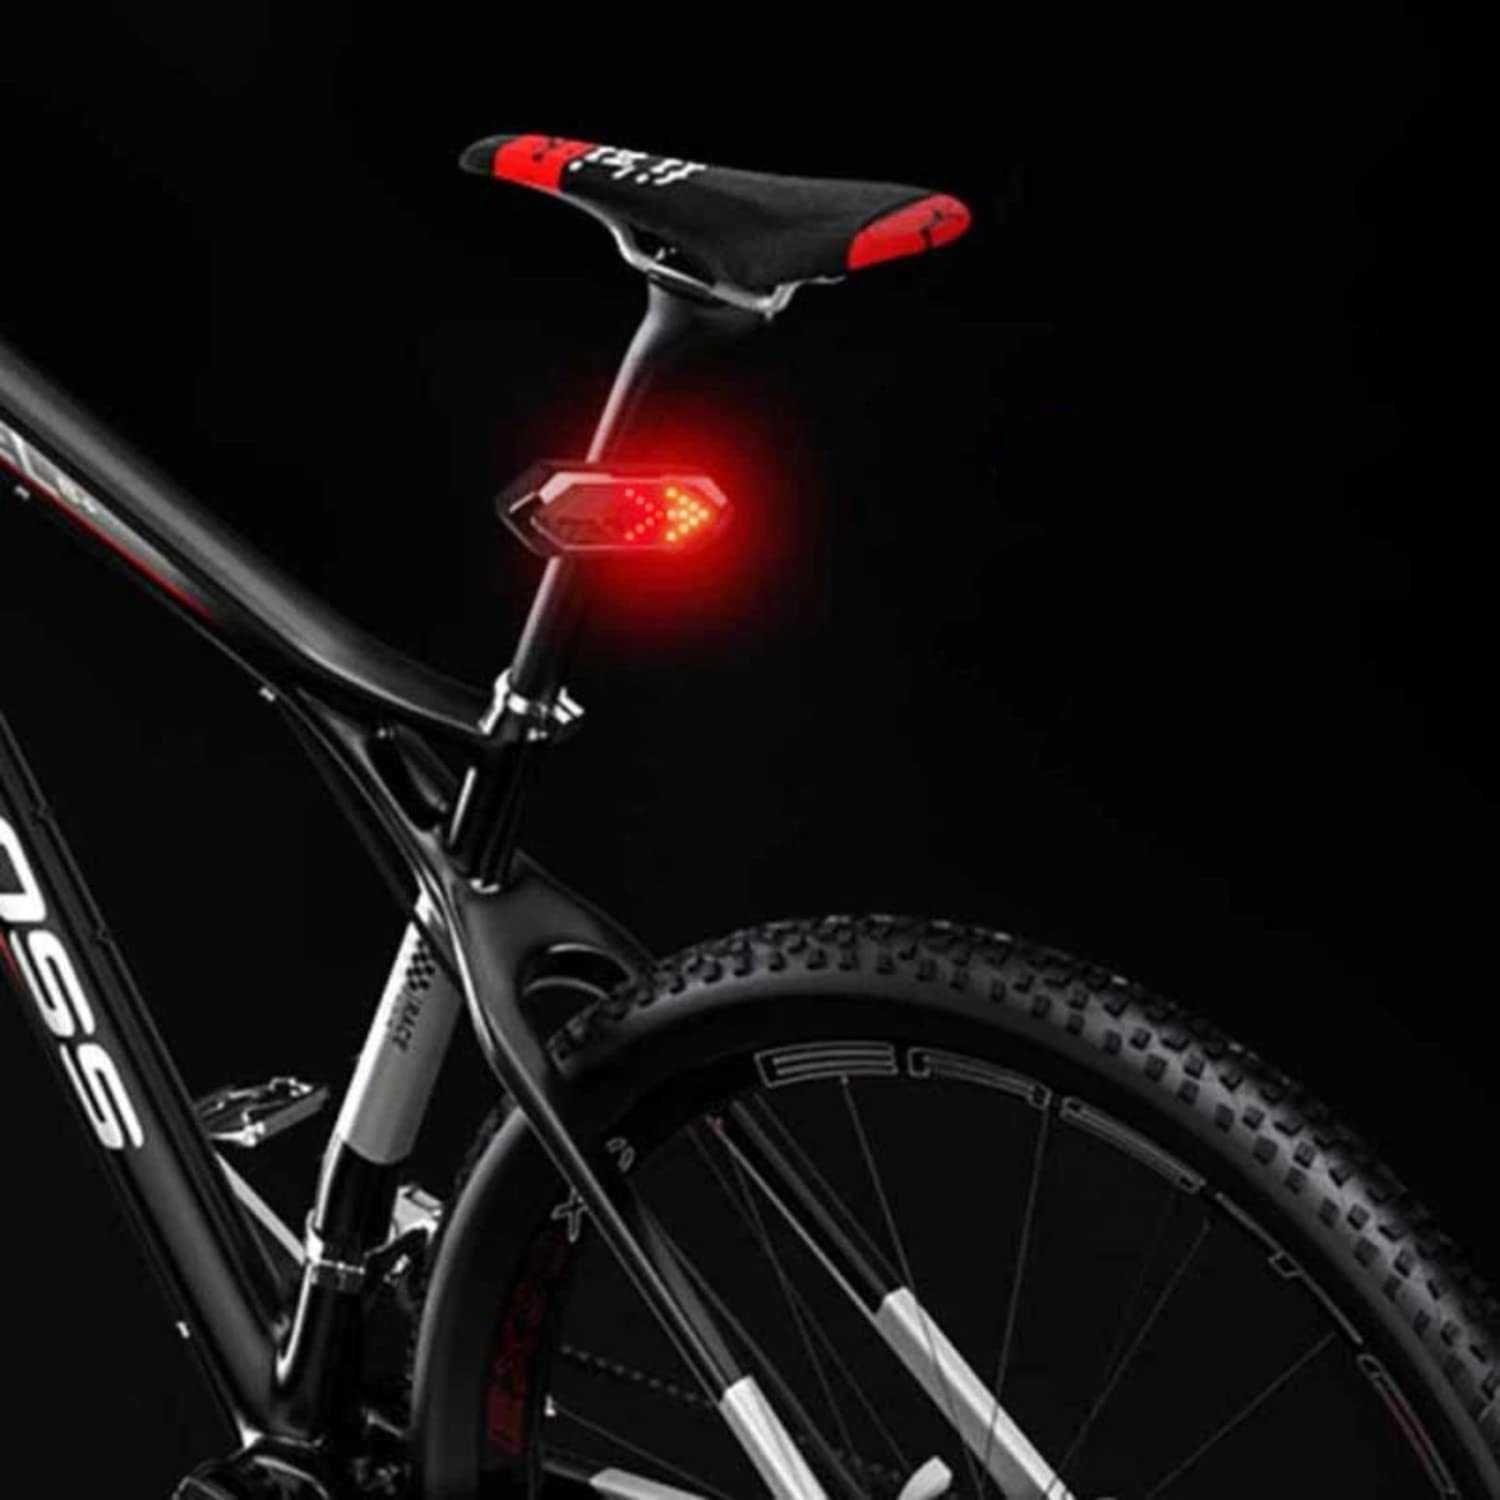 Piscas LED impermeável bicicleta trotinete bat.750mAh usb c/comando